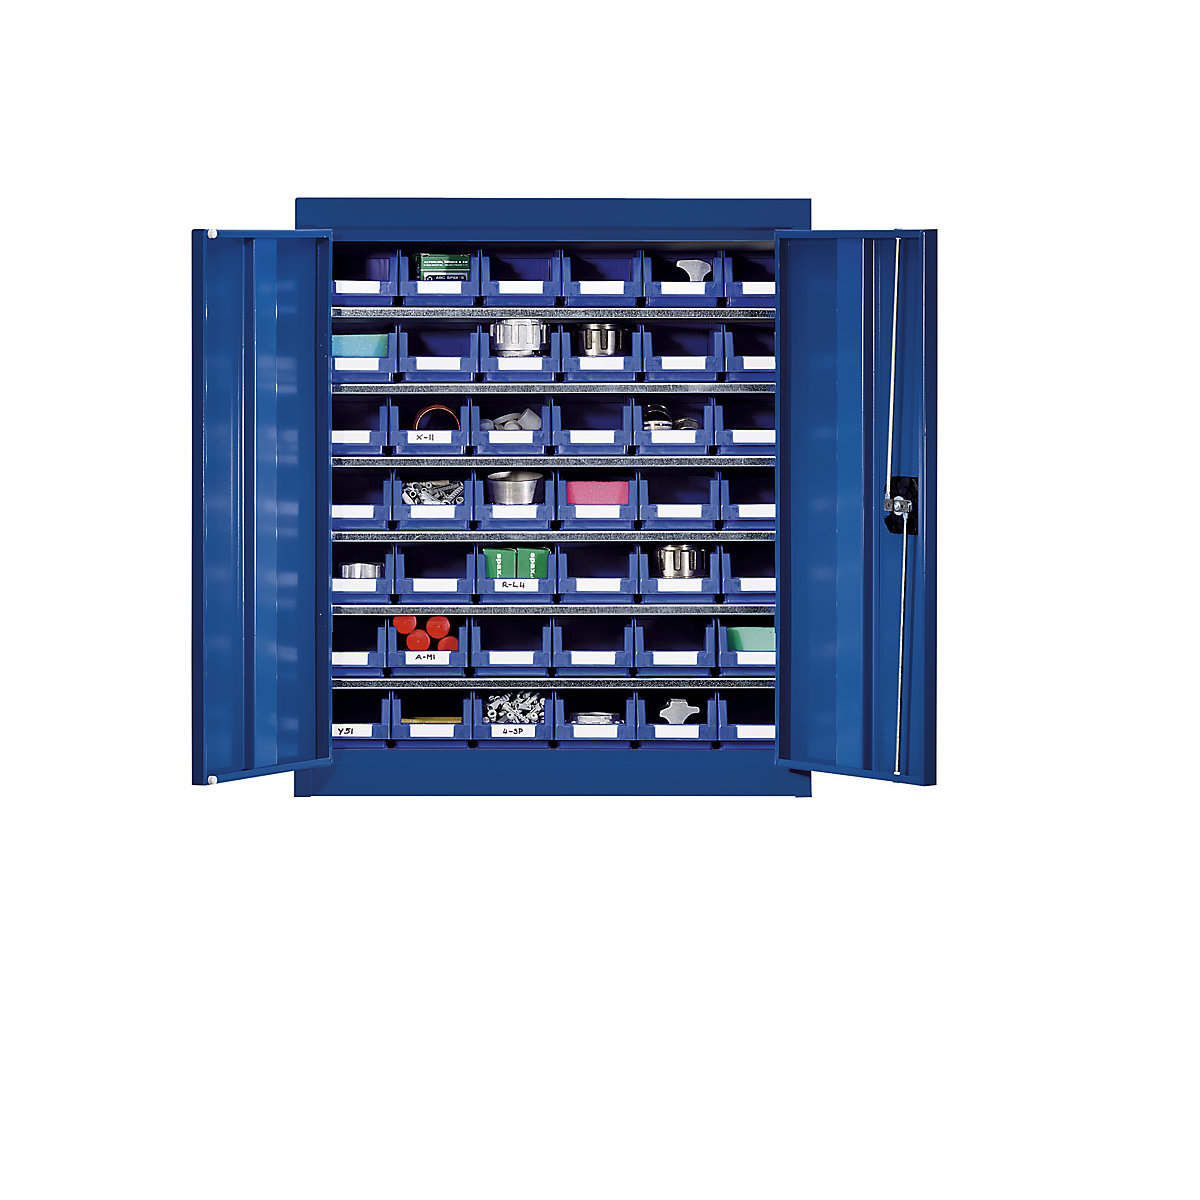 Omara za material s skladiščnimi posodami – eurokraft pro, višina 780 mm, 6 polic, encijan modra-6